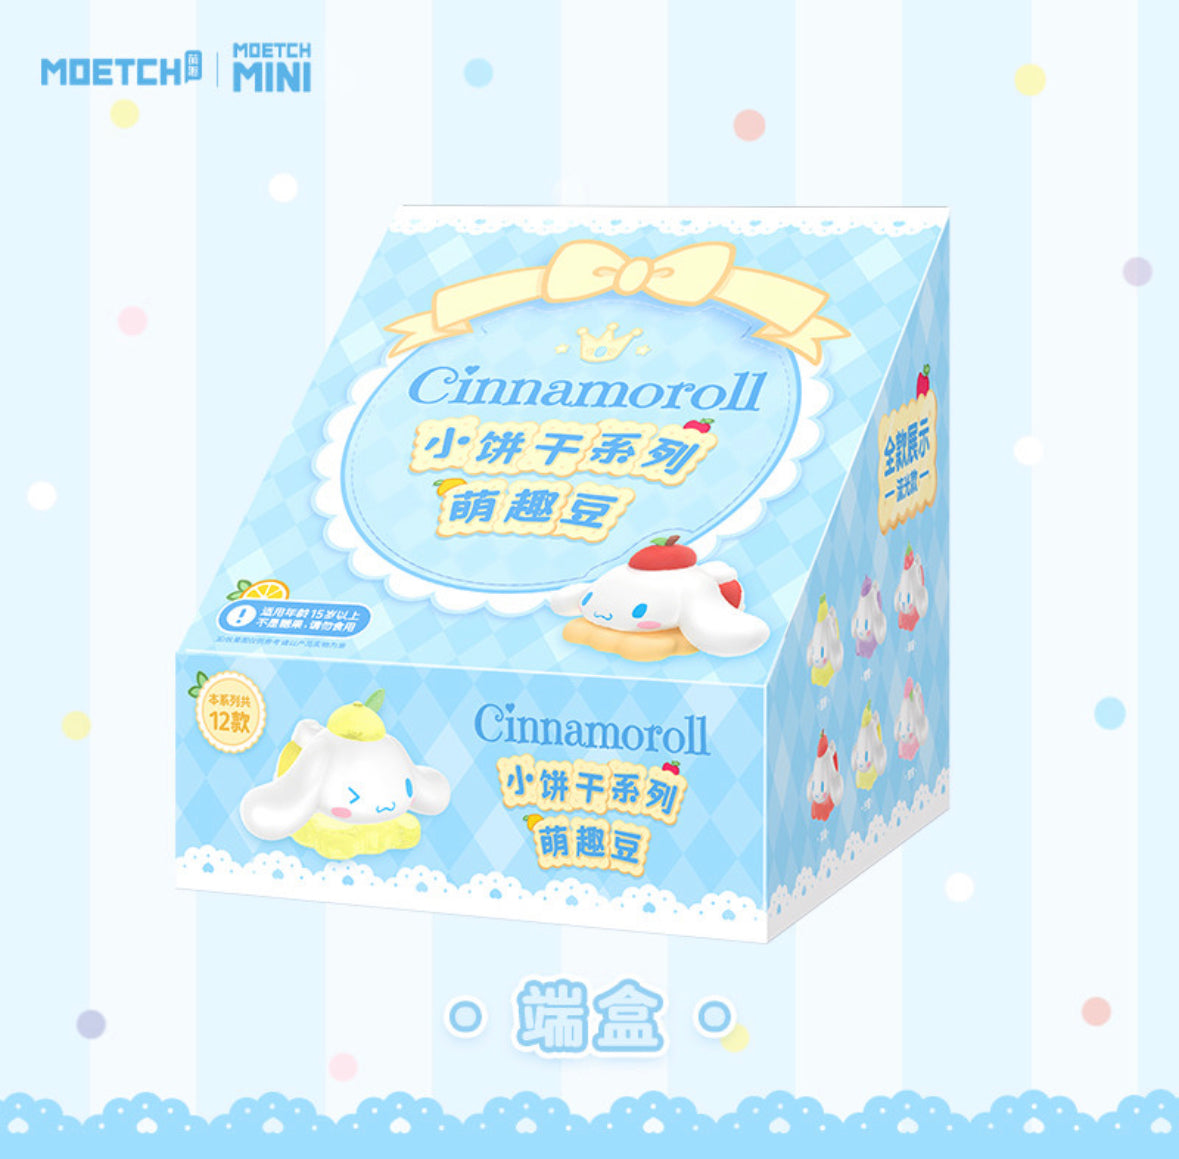 Moetch Sanrio Cinnamoroll Weekend Plans Series Blind Box Mini